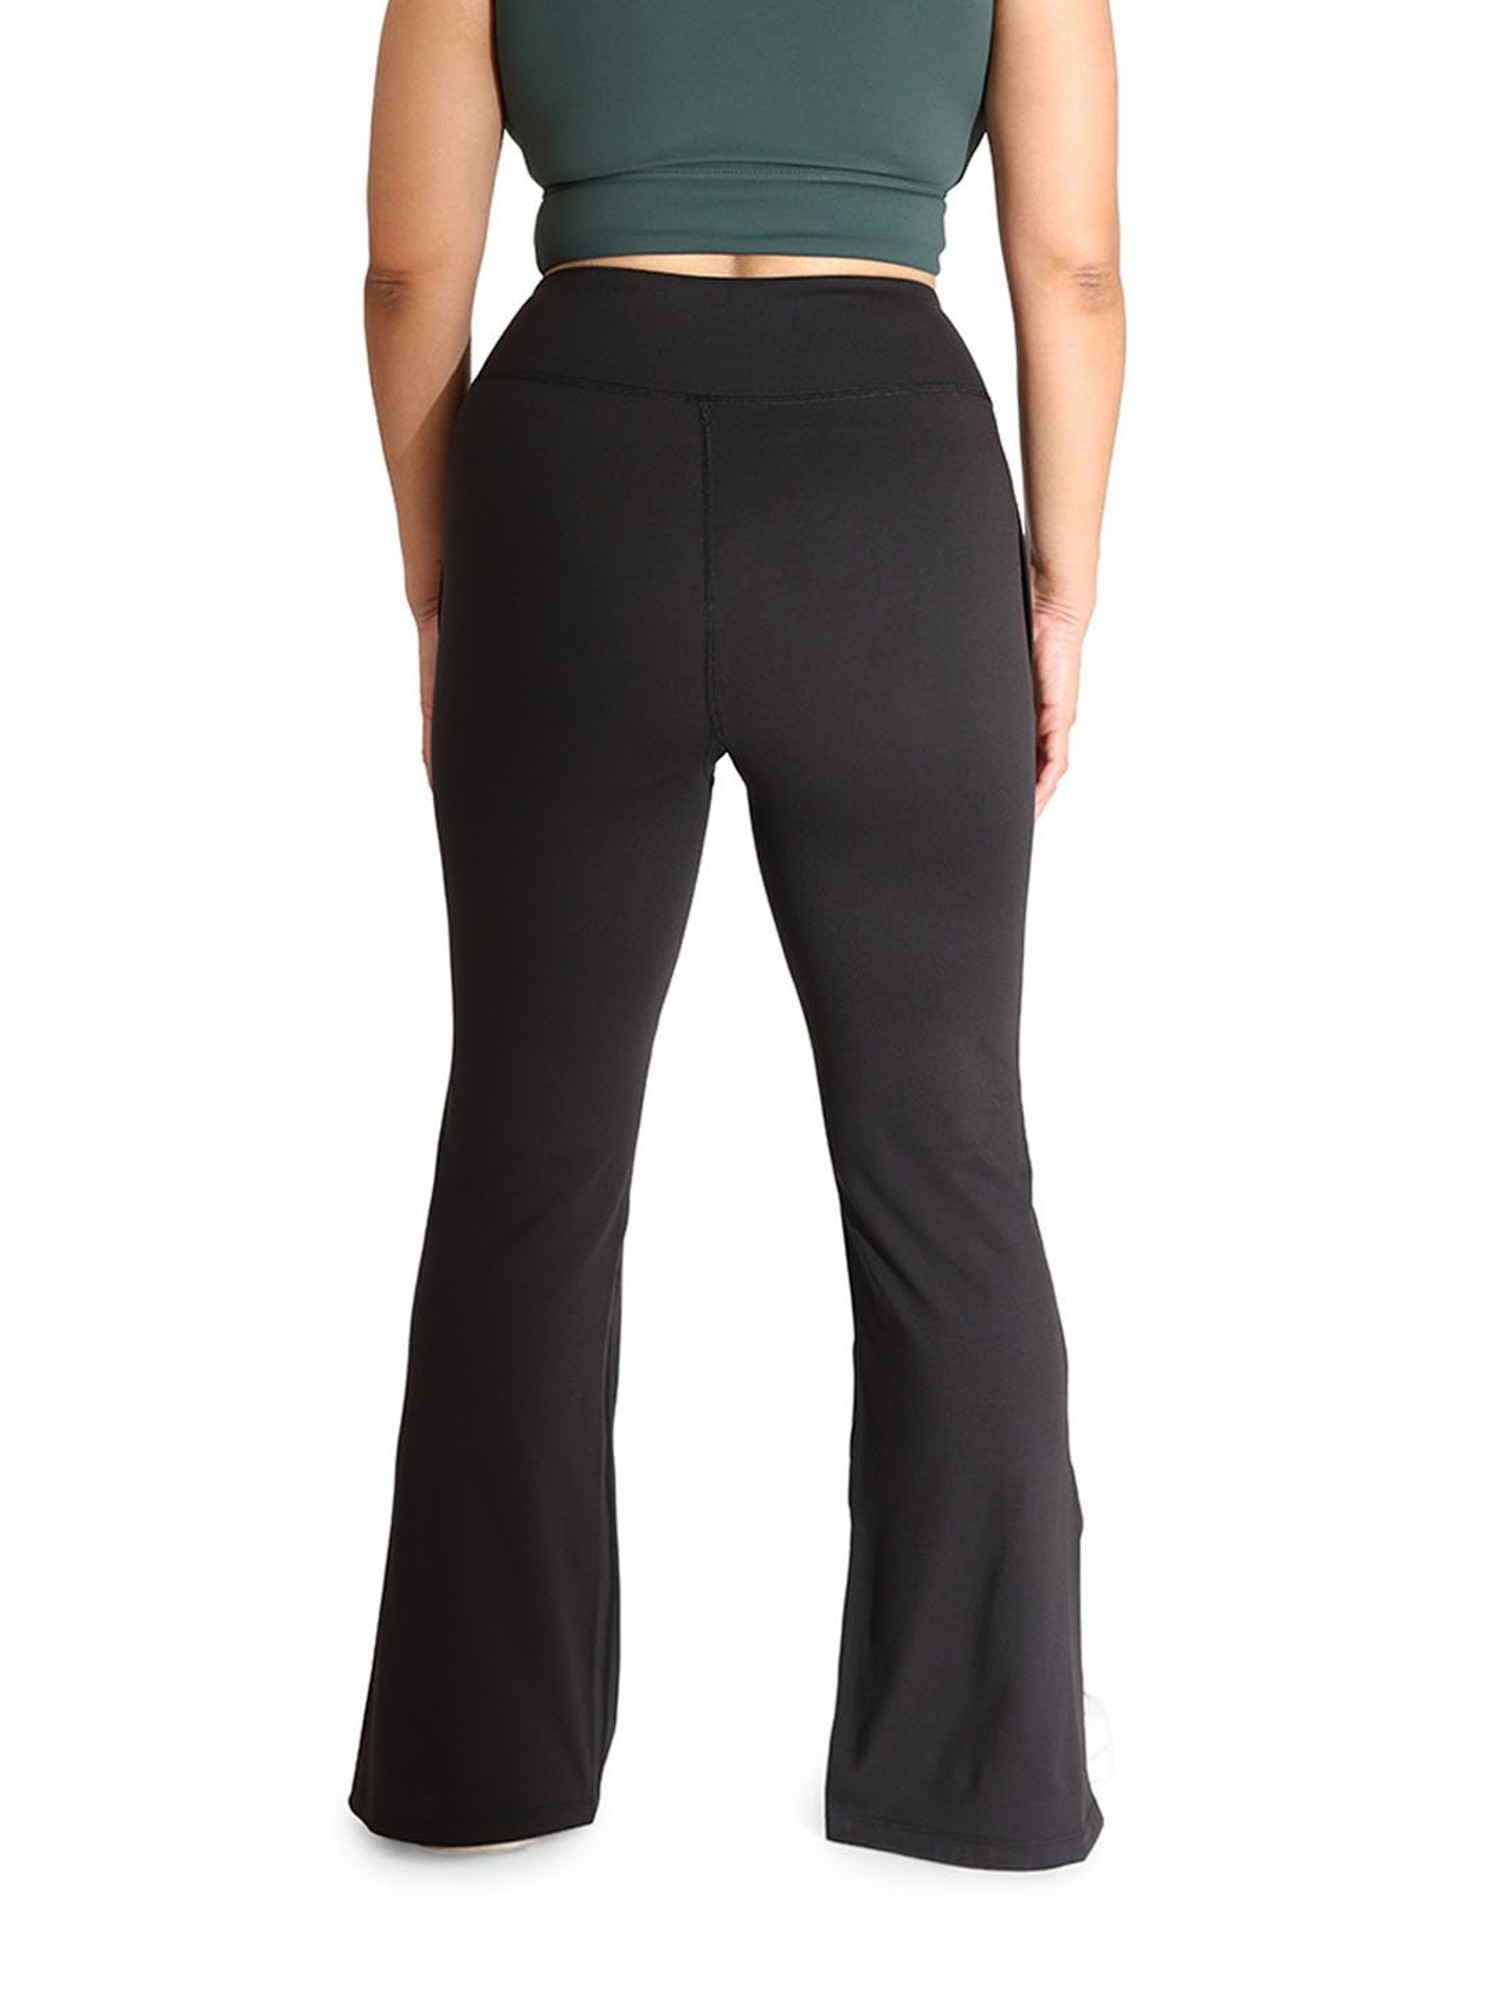 Buy BlissClub Women Black On-The-Go Slit Flare Pants for Women's